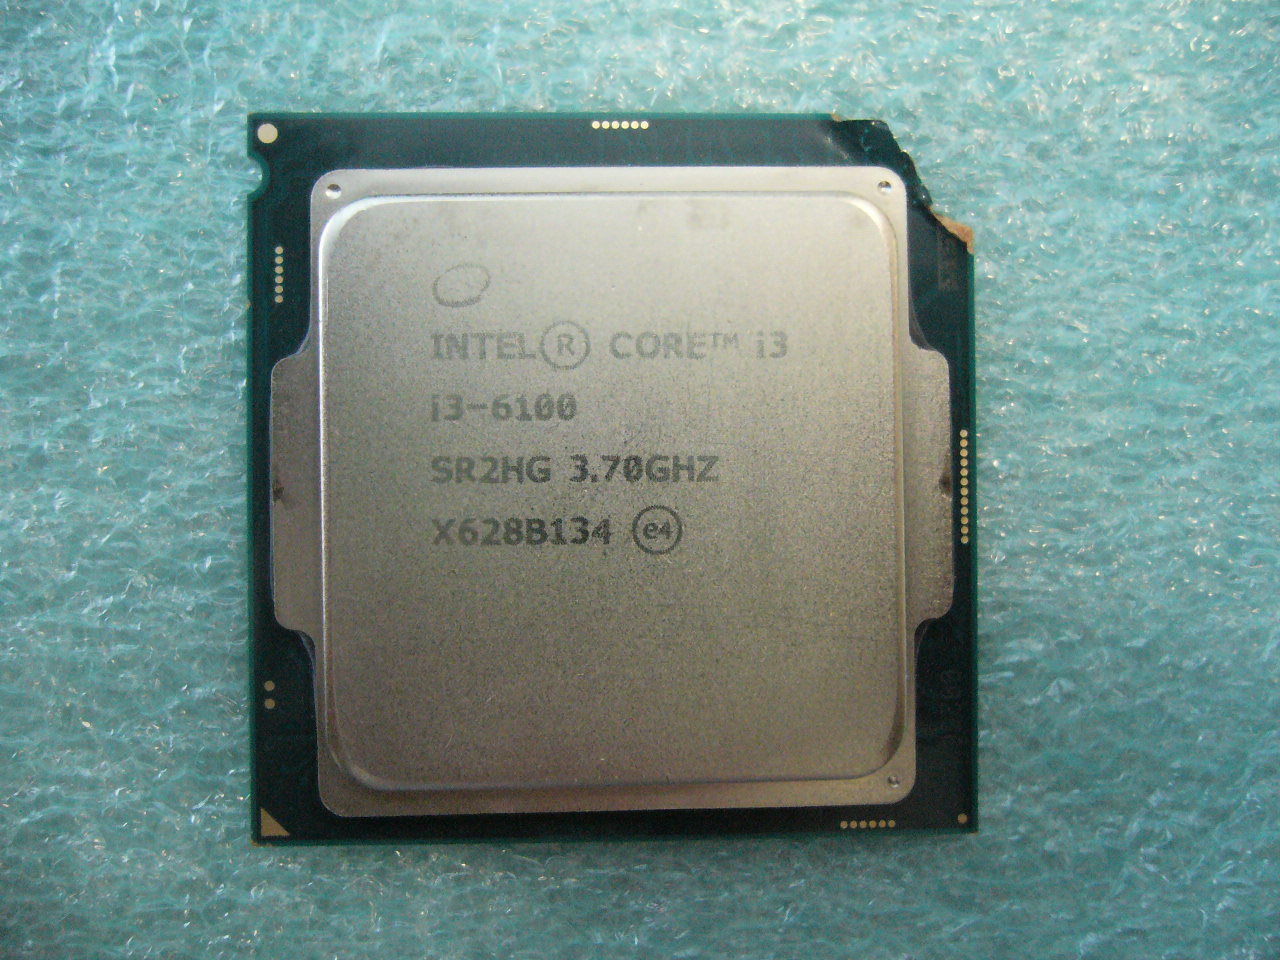 QTY 1x Intel CPU i3-6100 Dual-Cores 3.7Ghz LGA1151 SR2HG NOT WORKING broken